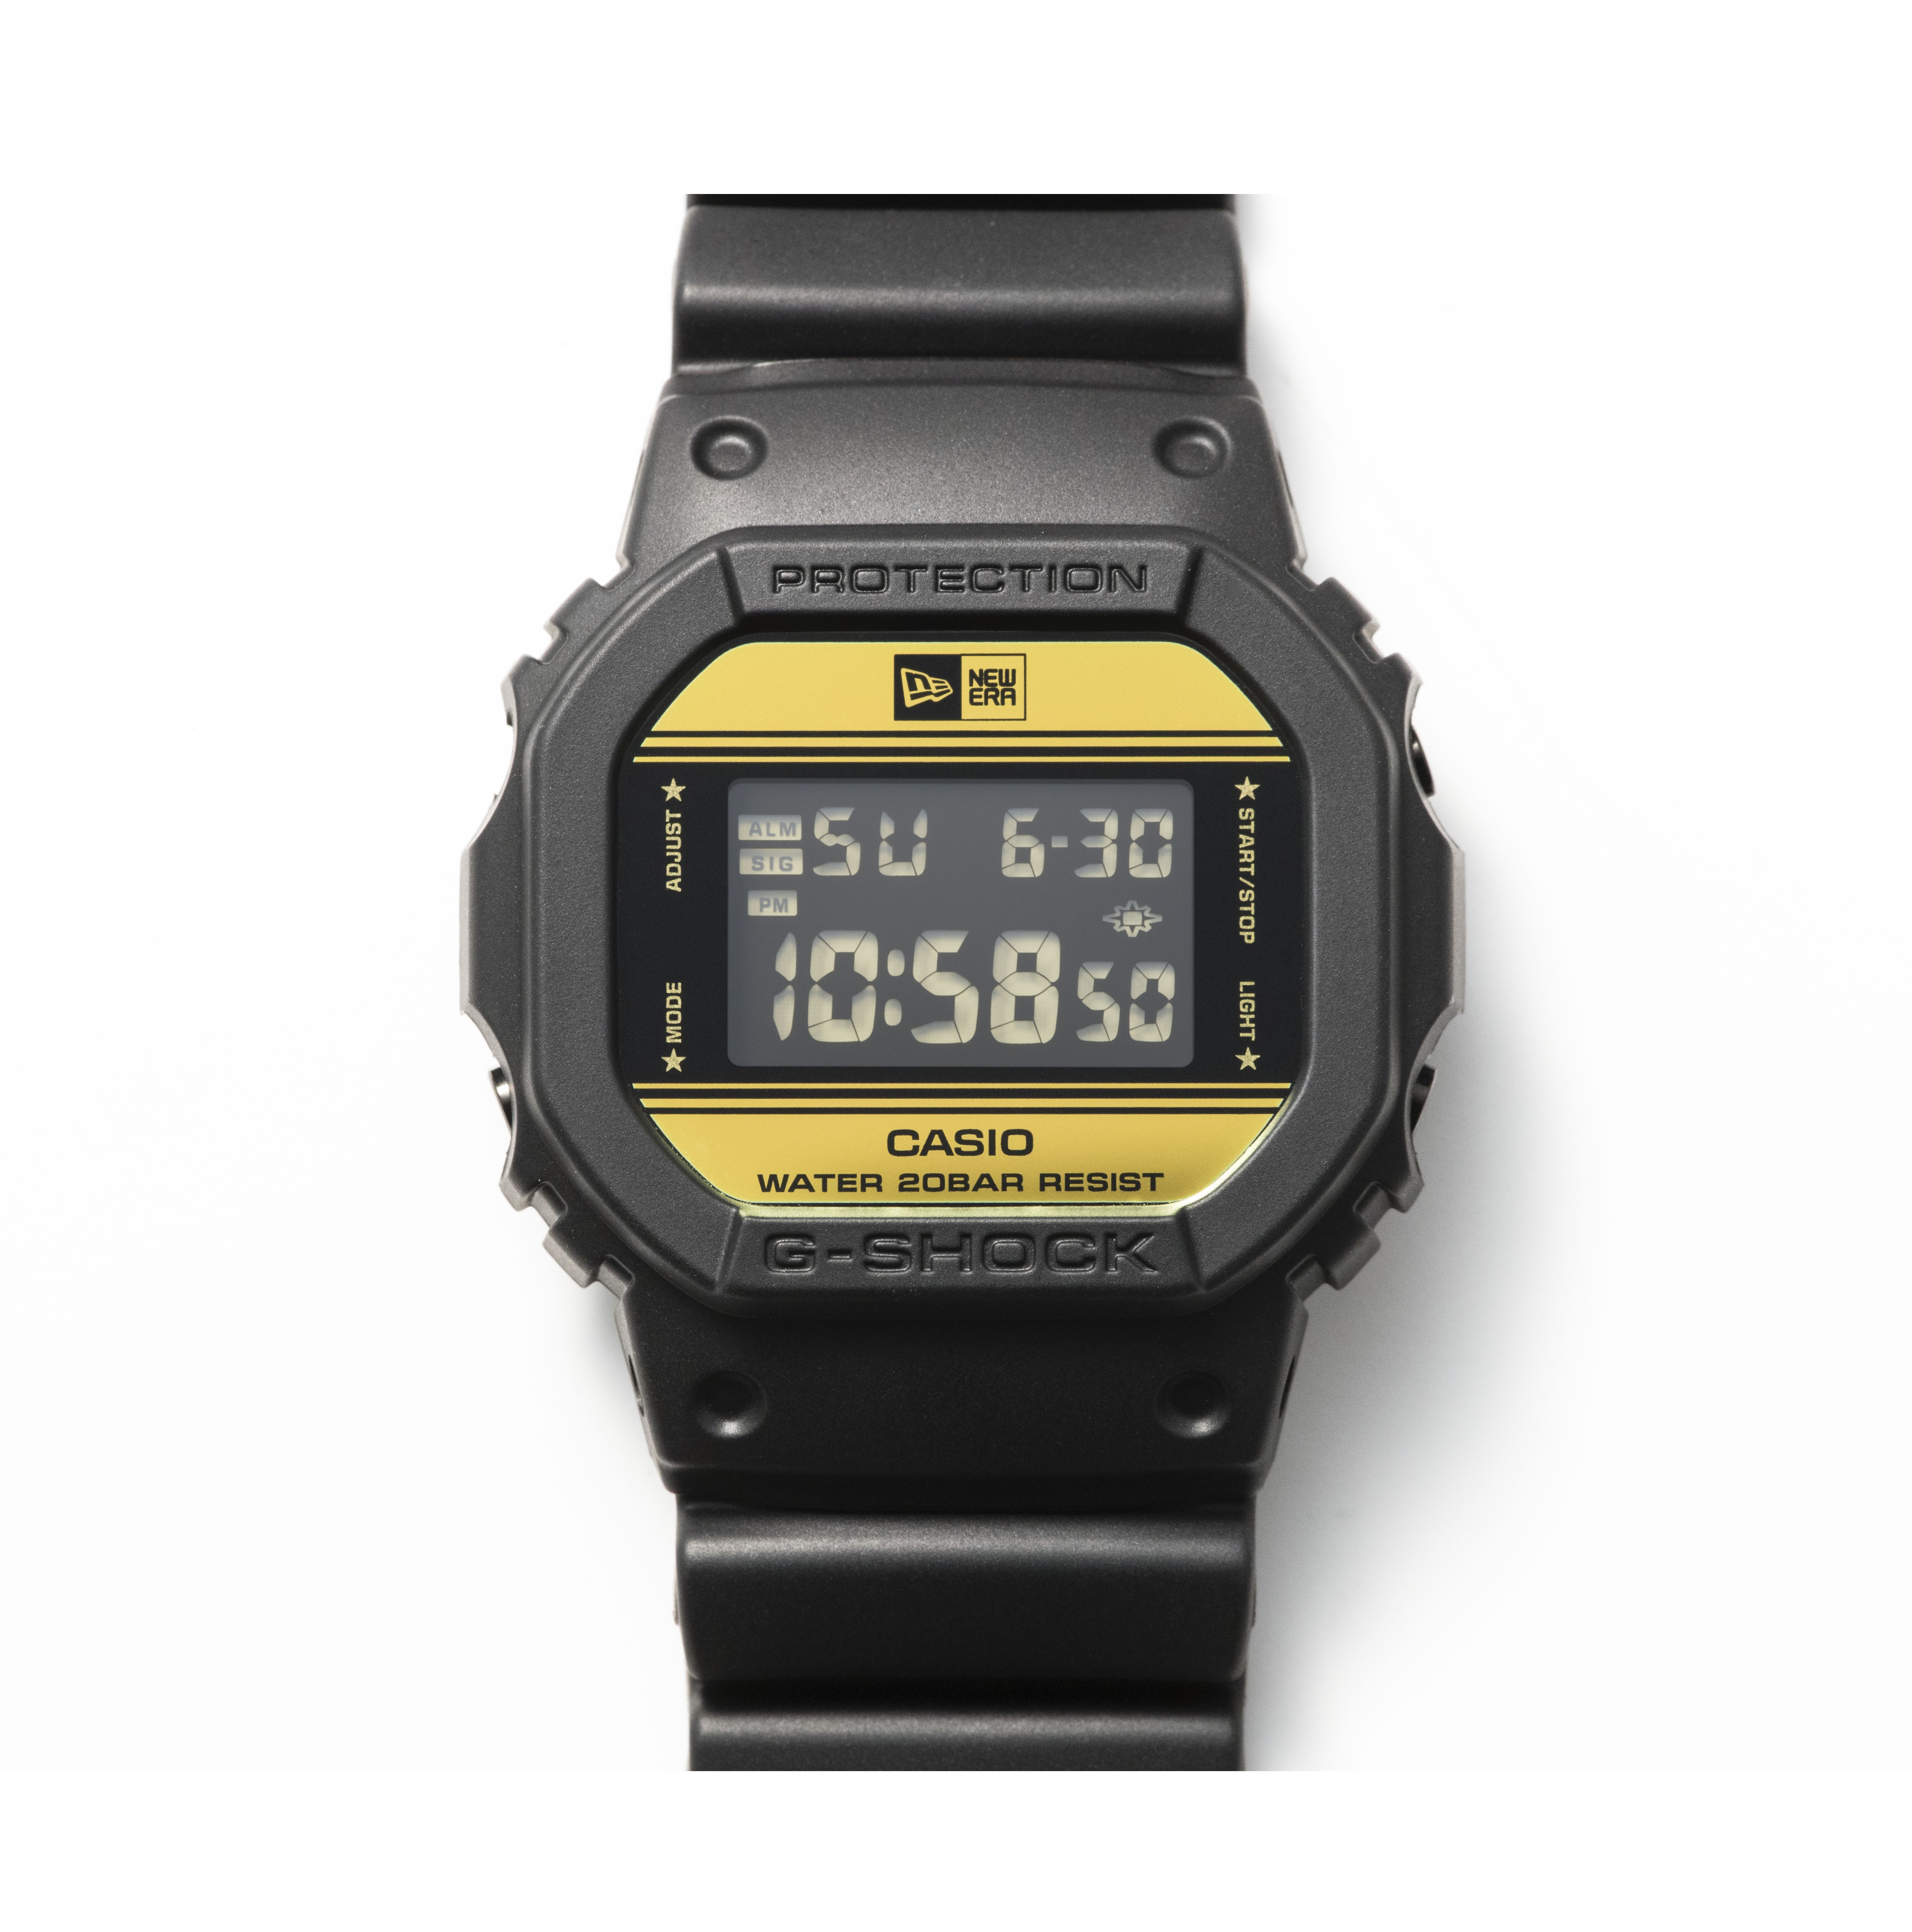 New Era X G-Shock Casio Watch